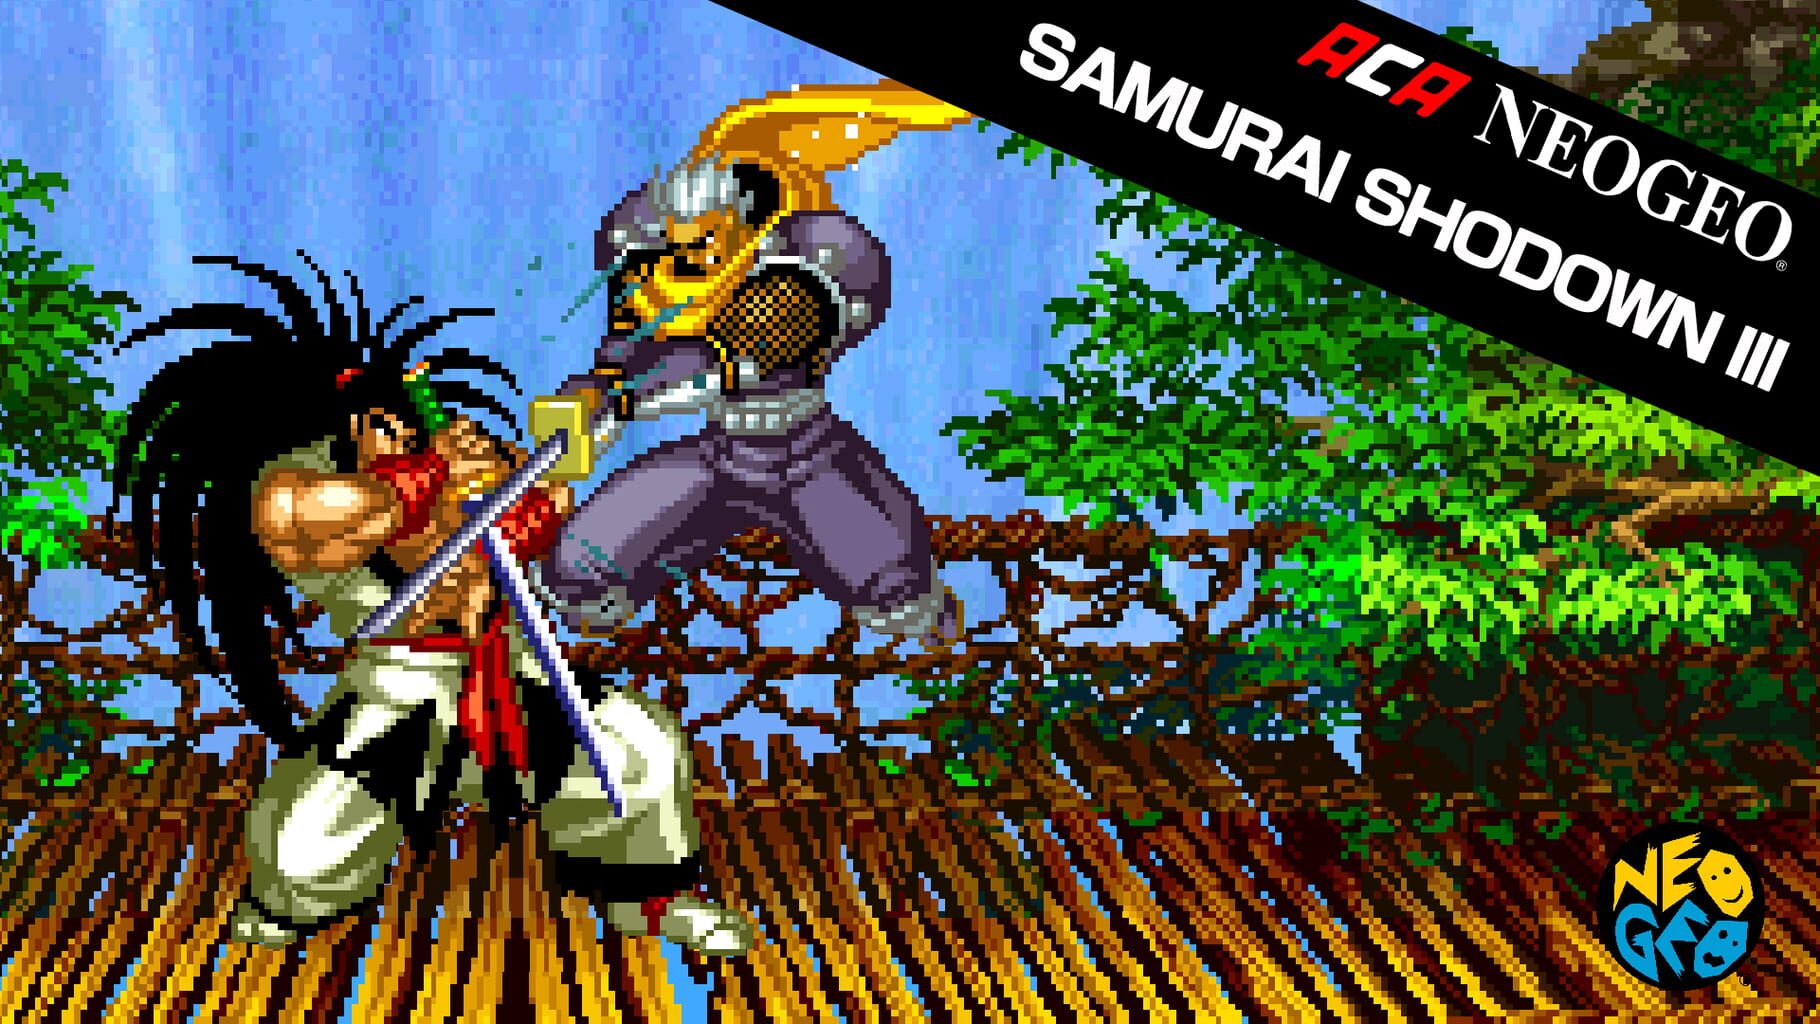 Arte - ACA Neo Geo: Samurai Shodown III